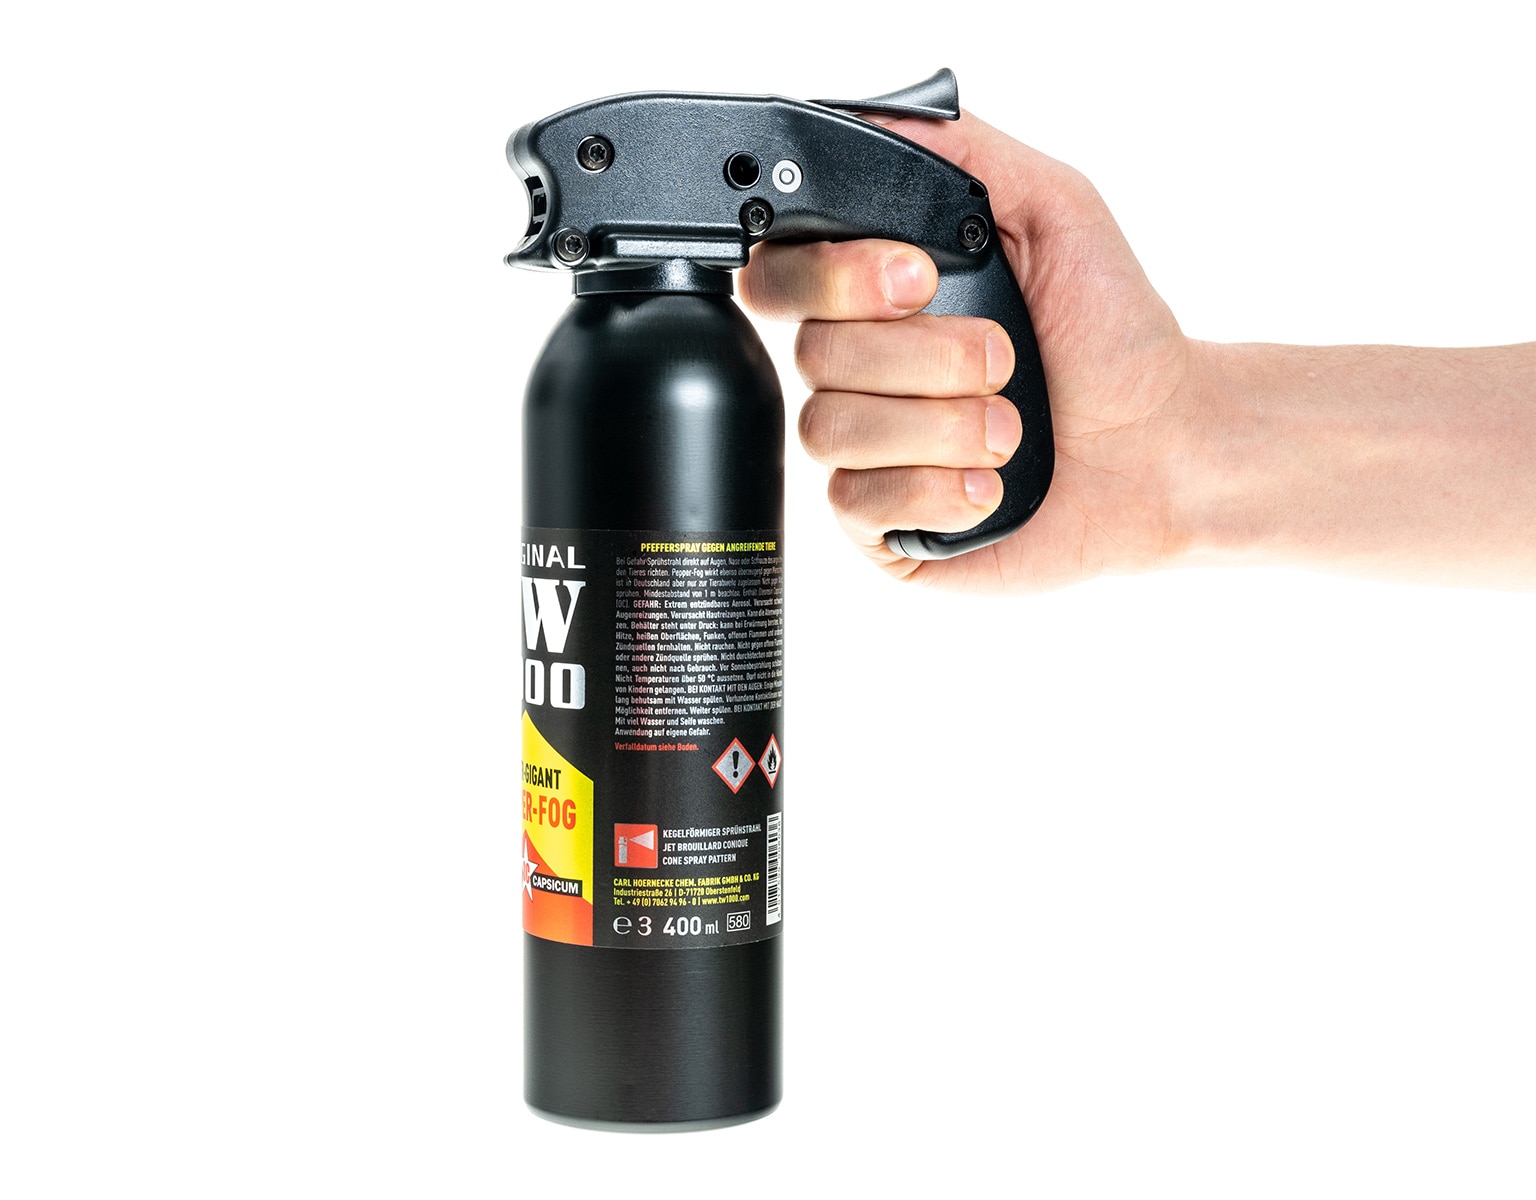 Газовий балончик TW 1000 Pepper Gigant Spray 400 мл - конус